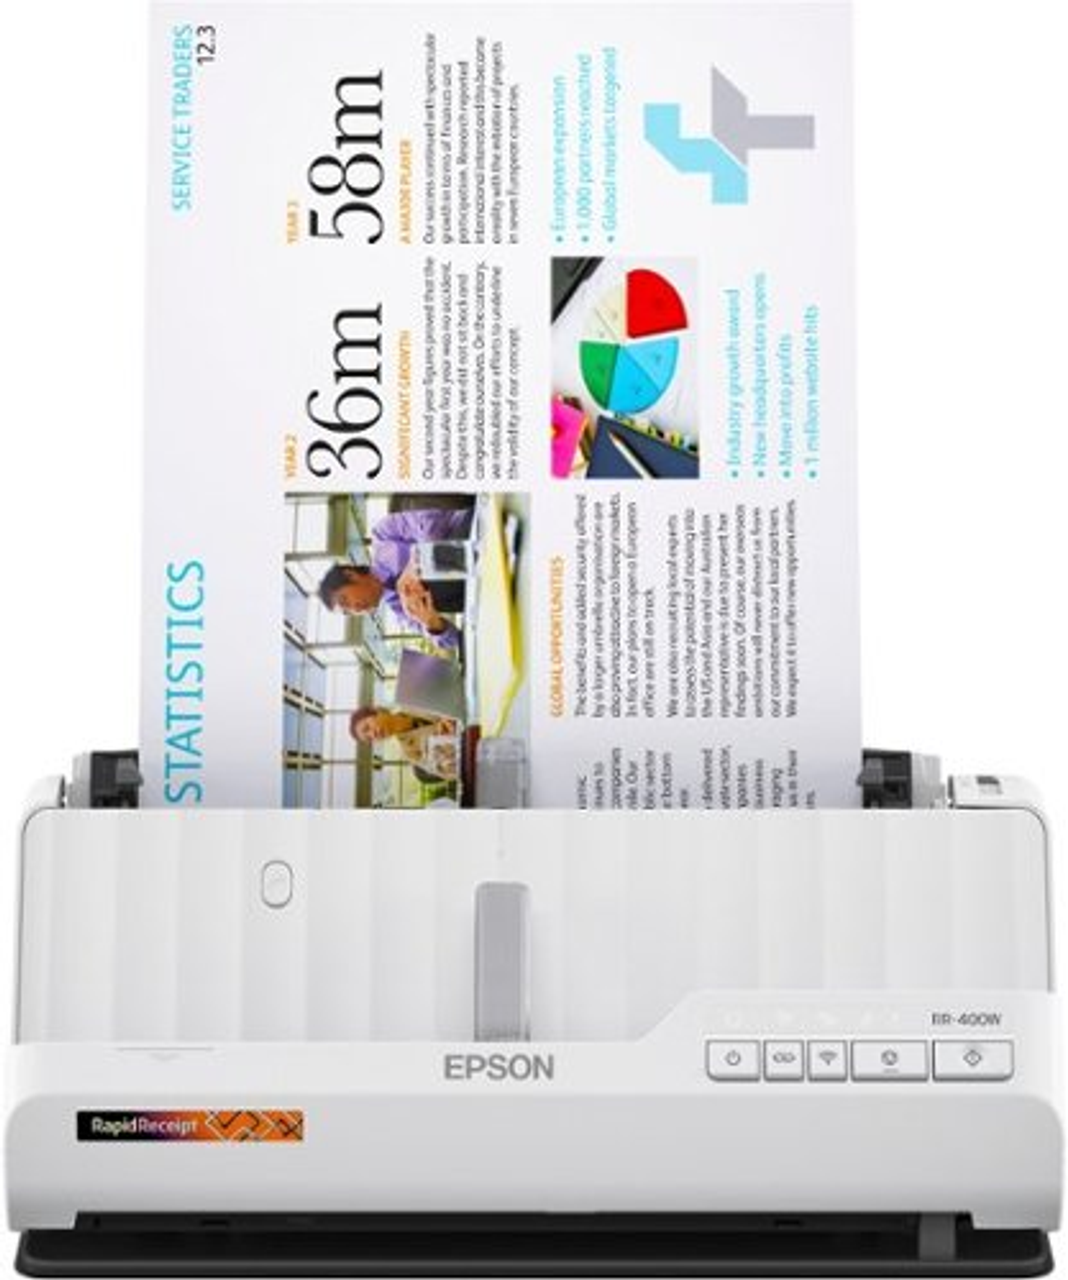 Epson RapidReceipt RR-400W Wireless Duplex Compact Desktop Receipt and Document Scanner - White